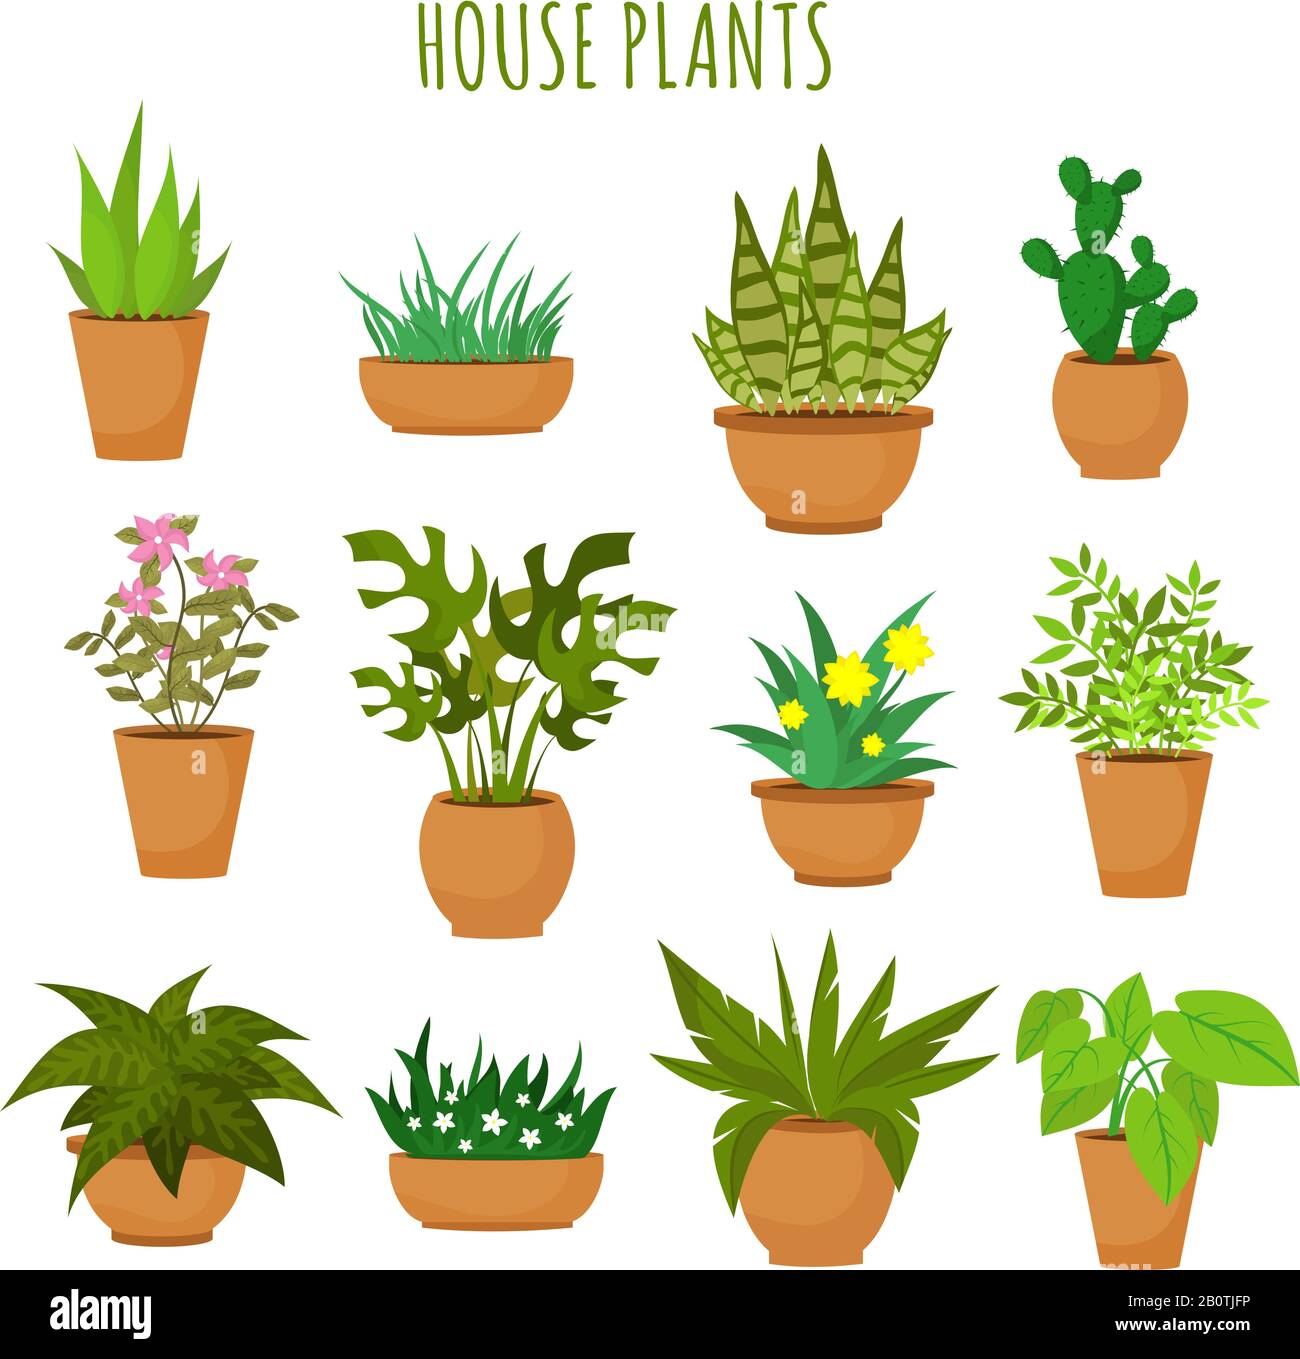 Casa interior plantas verdes y flores aisladas sobre blanco vector conjunto. Plantas verdes en macetas, ilustración de plantas verdes de flores de jardín Ilustración del Vector